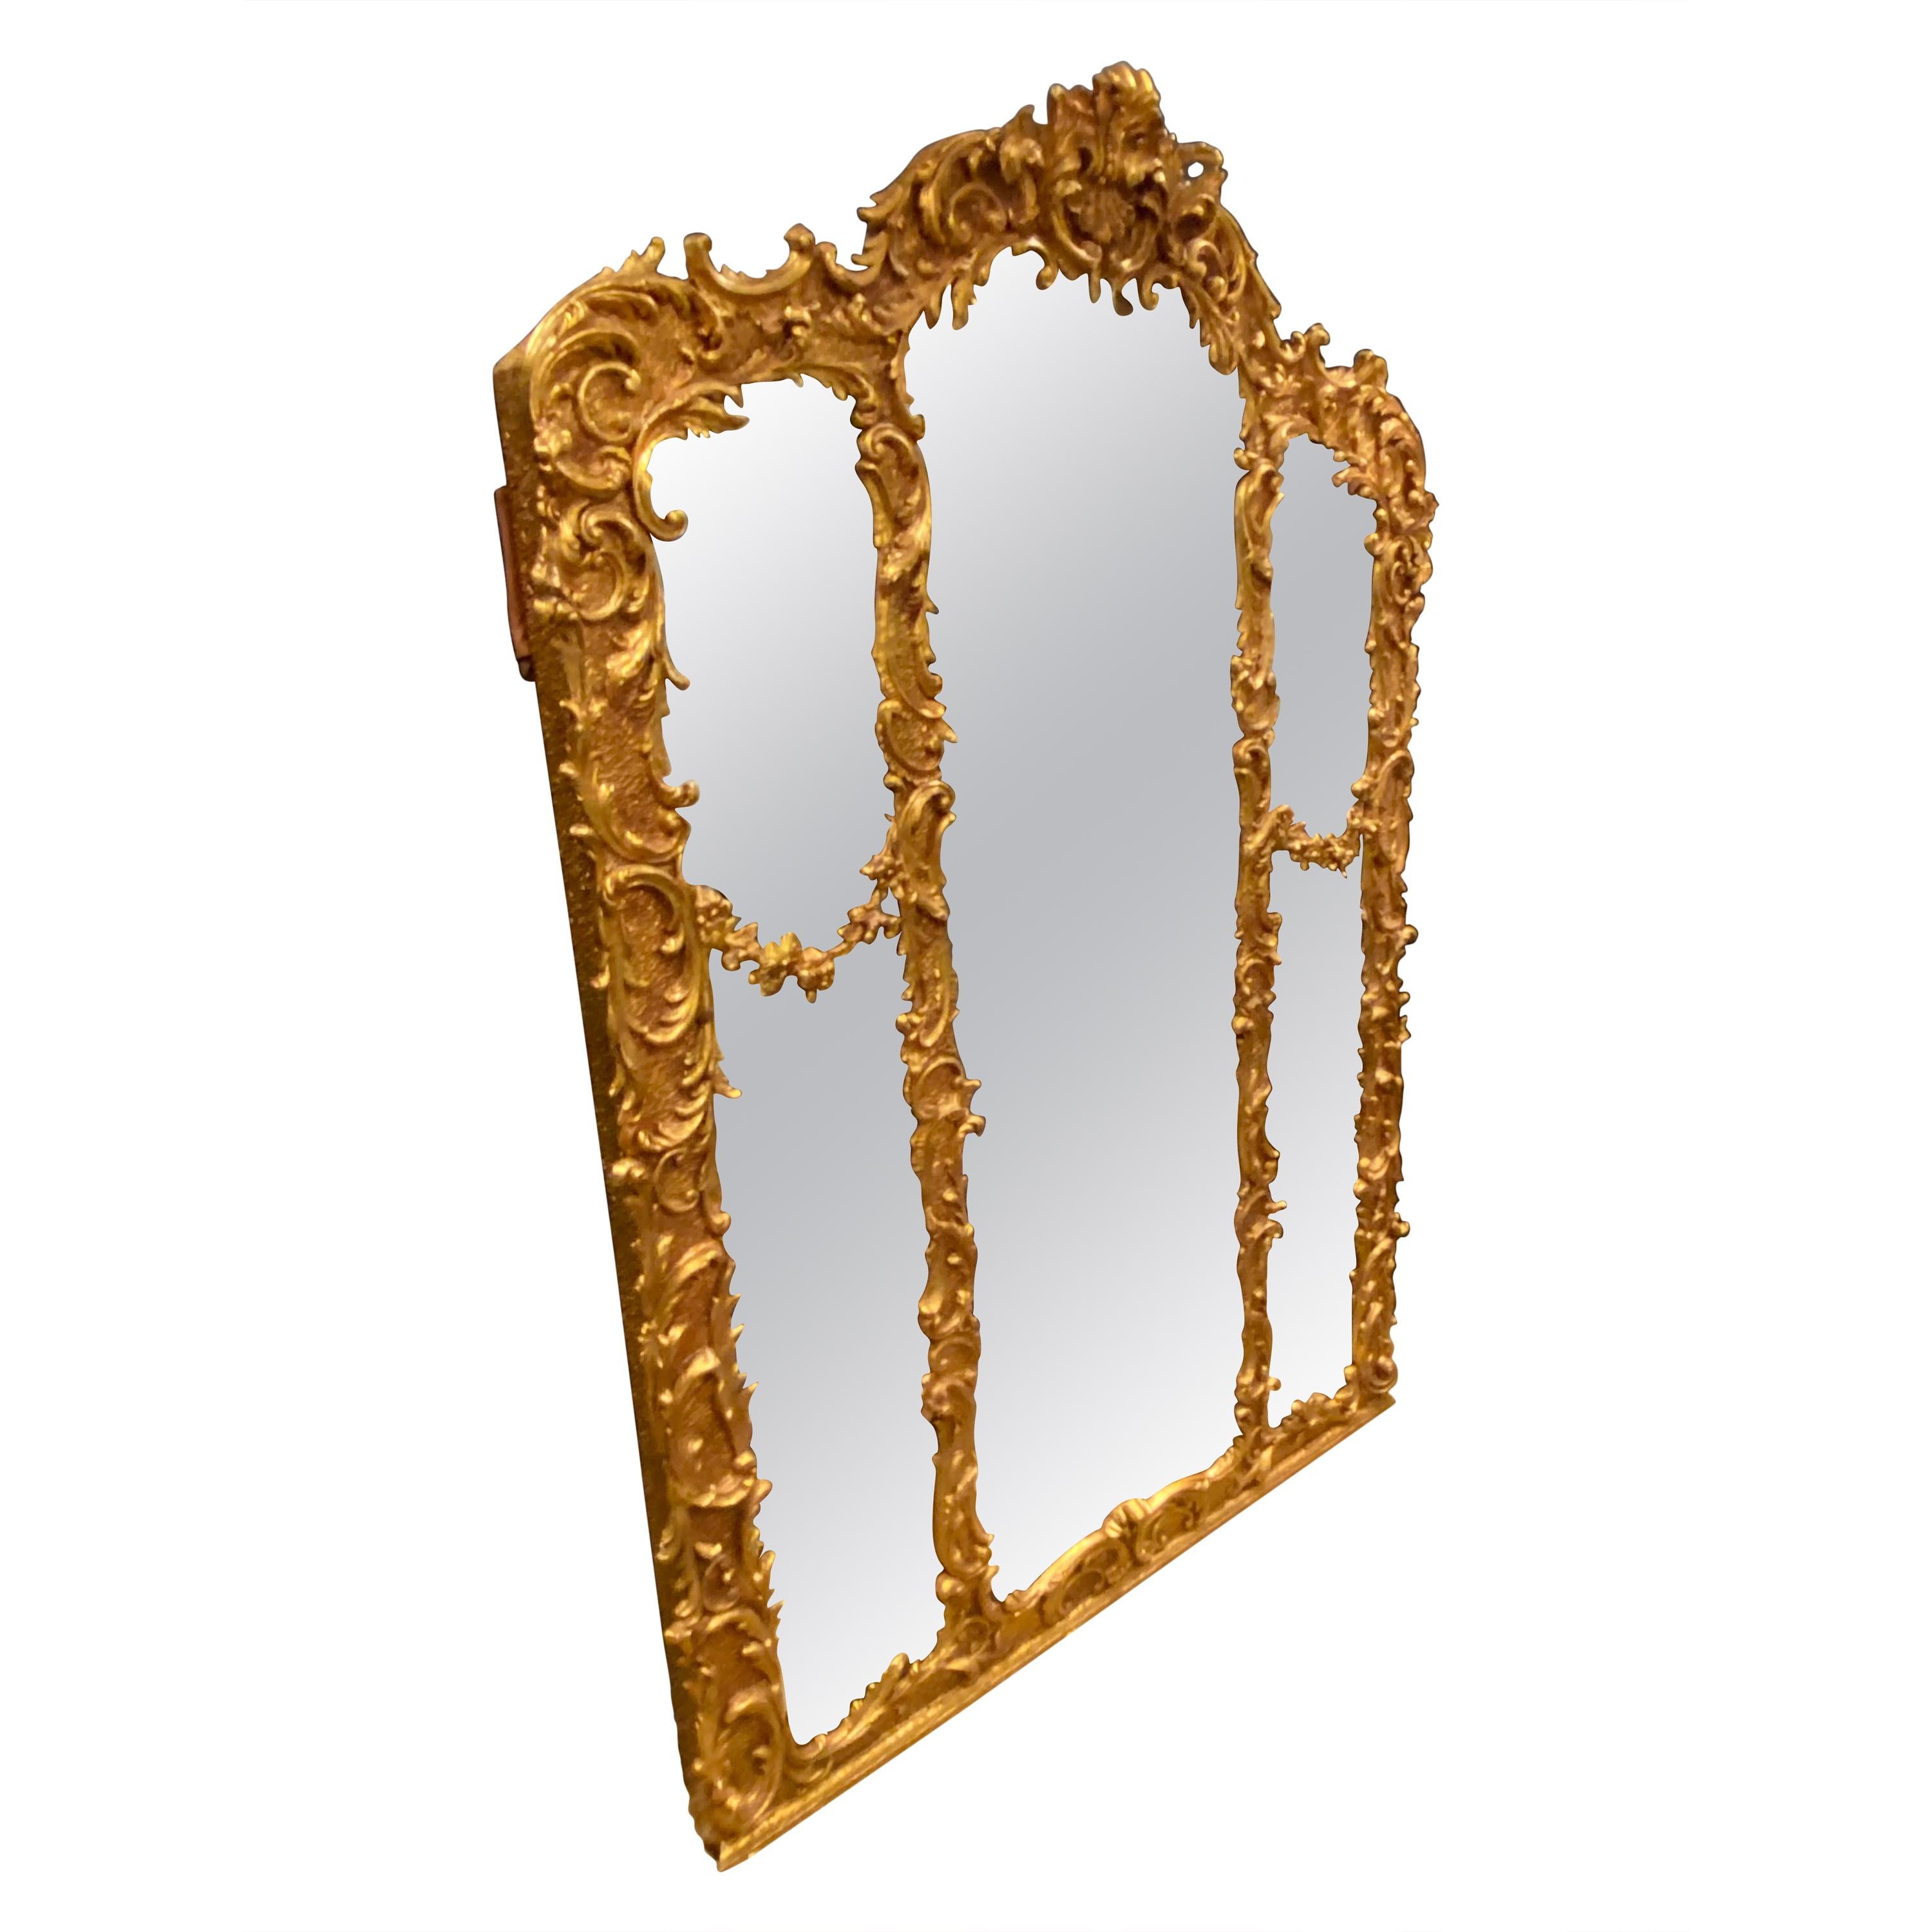 Miroir de style rococo avec cadre en bois et gesso de style édouardien sur feuille d'or de cheminée